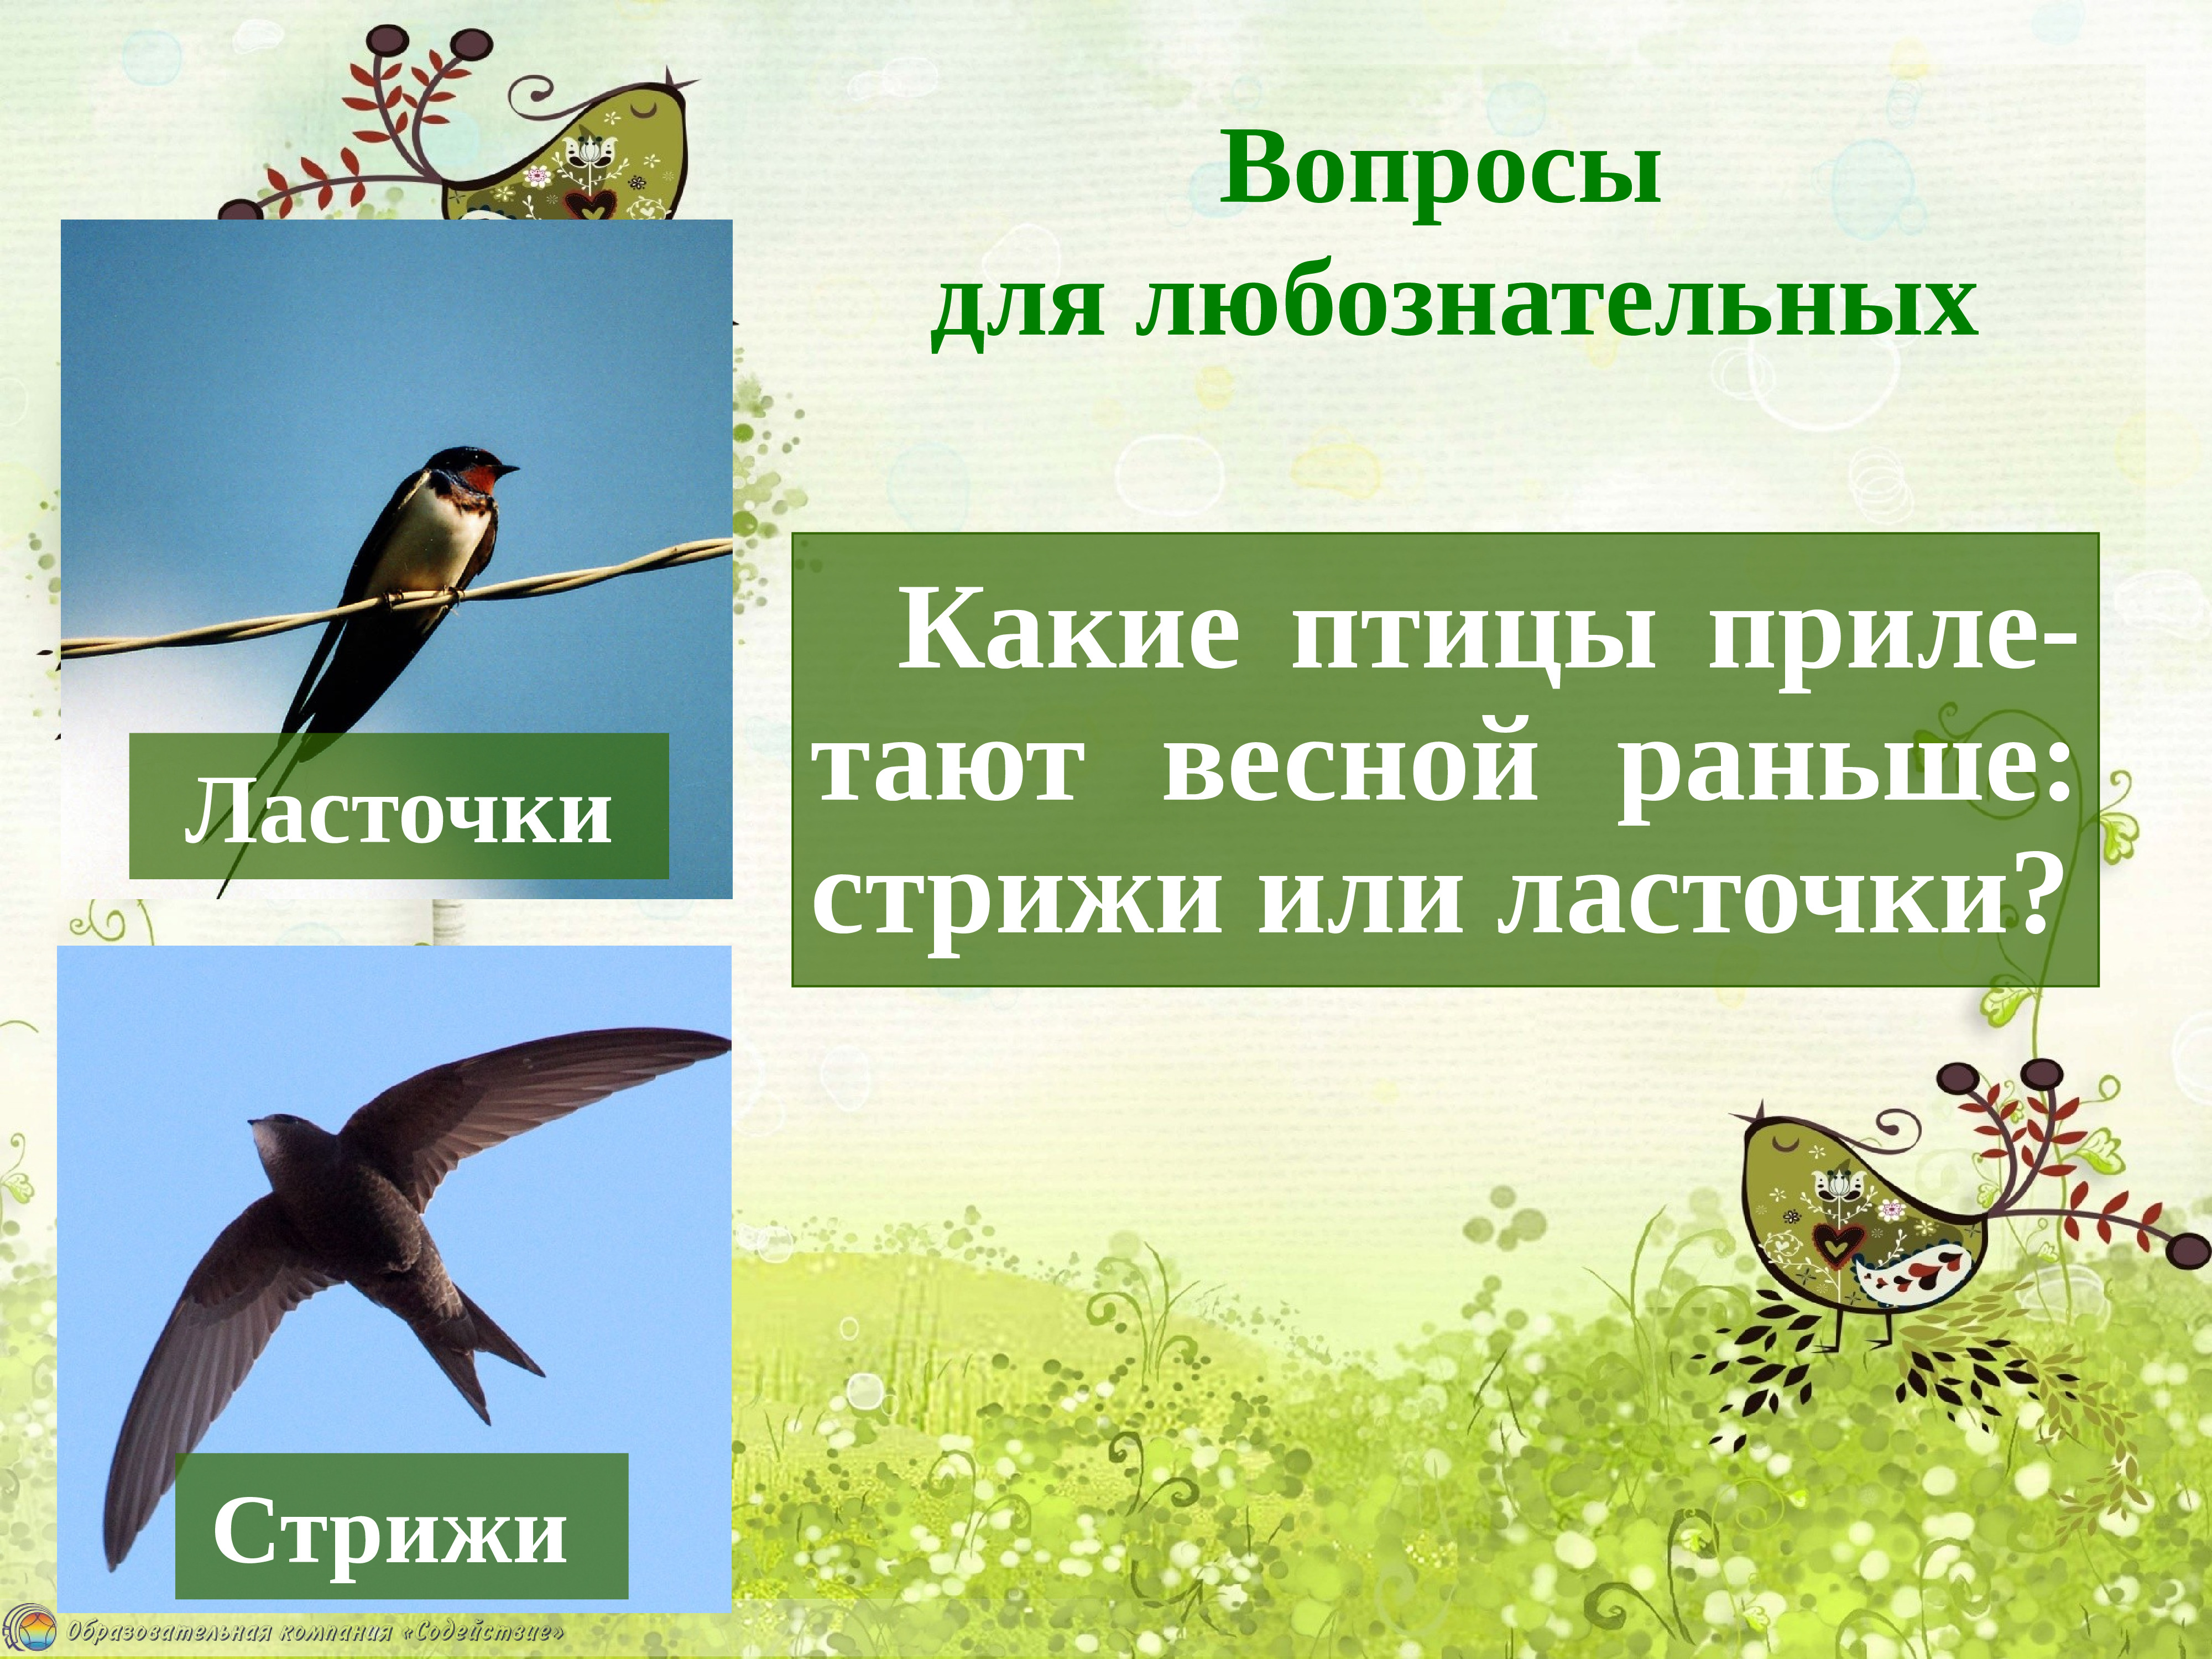 Изменения в жизни птиц весной. Слайд весенние изменения в жизни животных и птиц. Весенние изменения в жизни птиц. Птицы весной презентация для дошкольников.